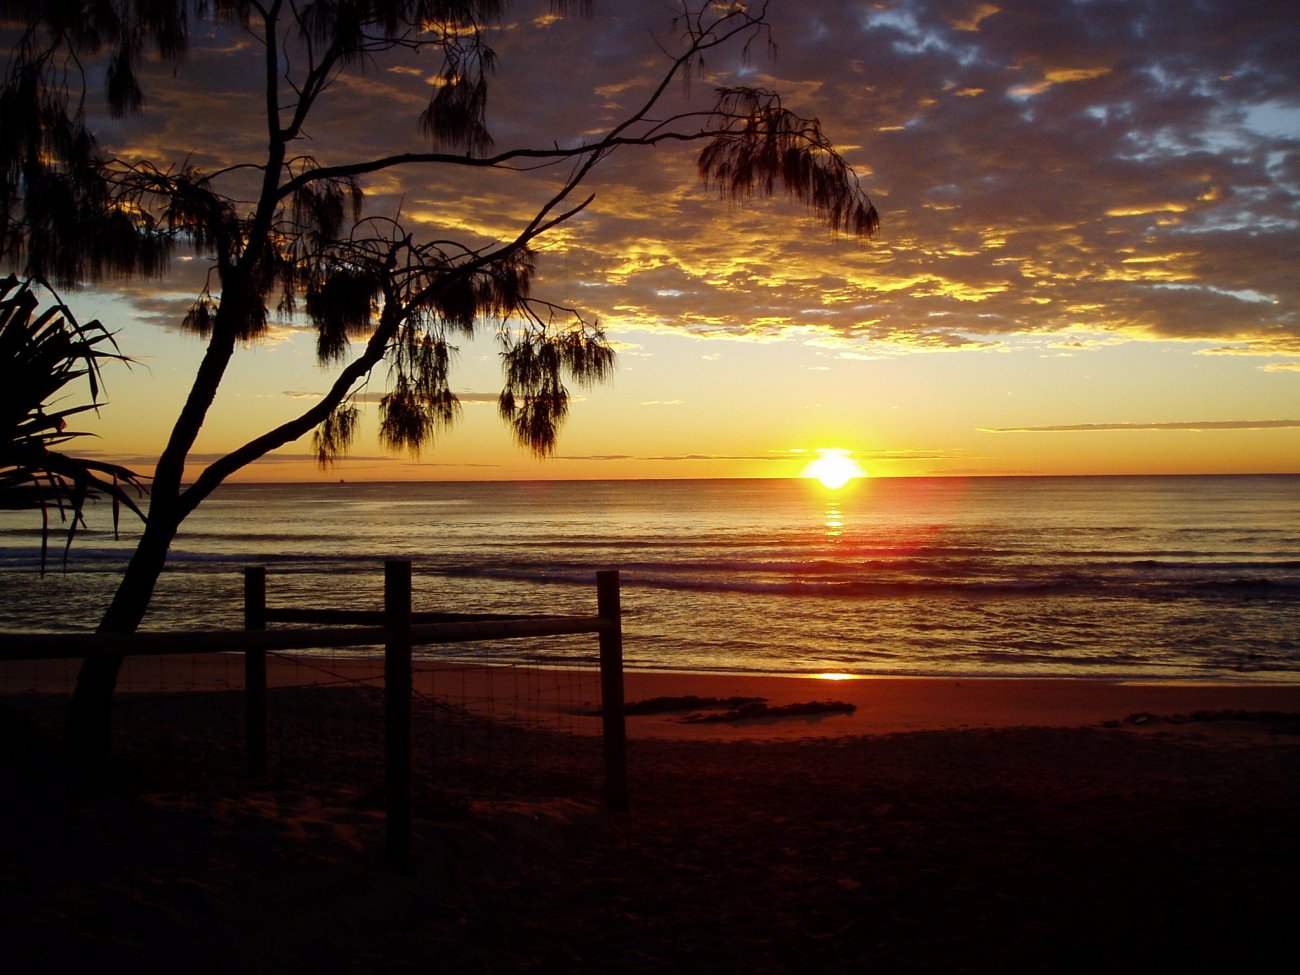 Sunrise Sunshine Coast by Muz151